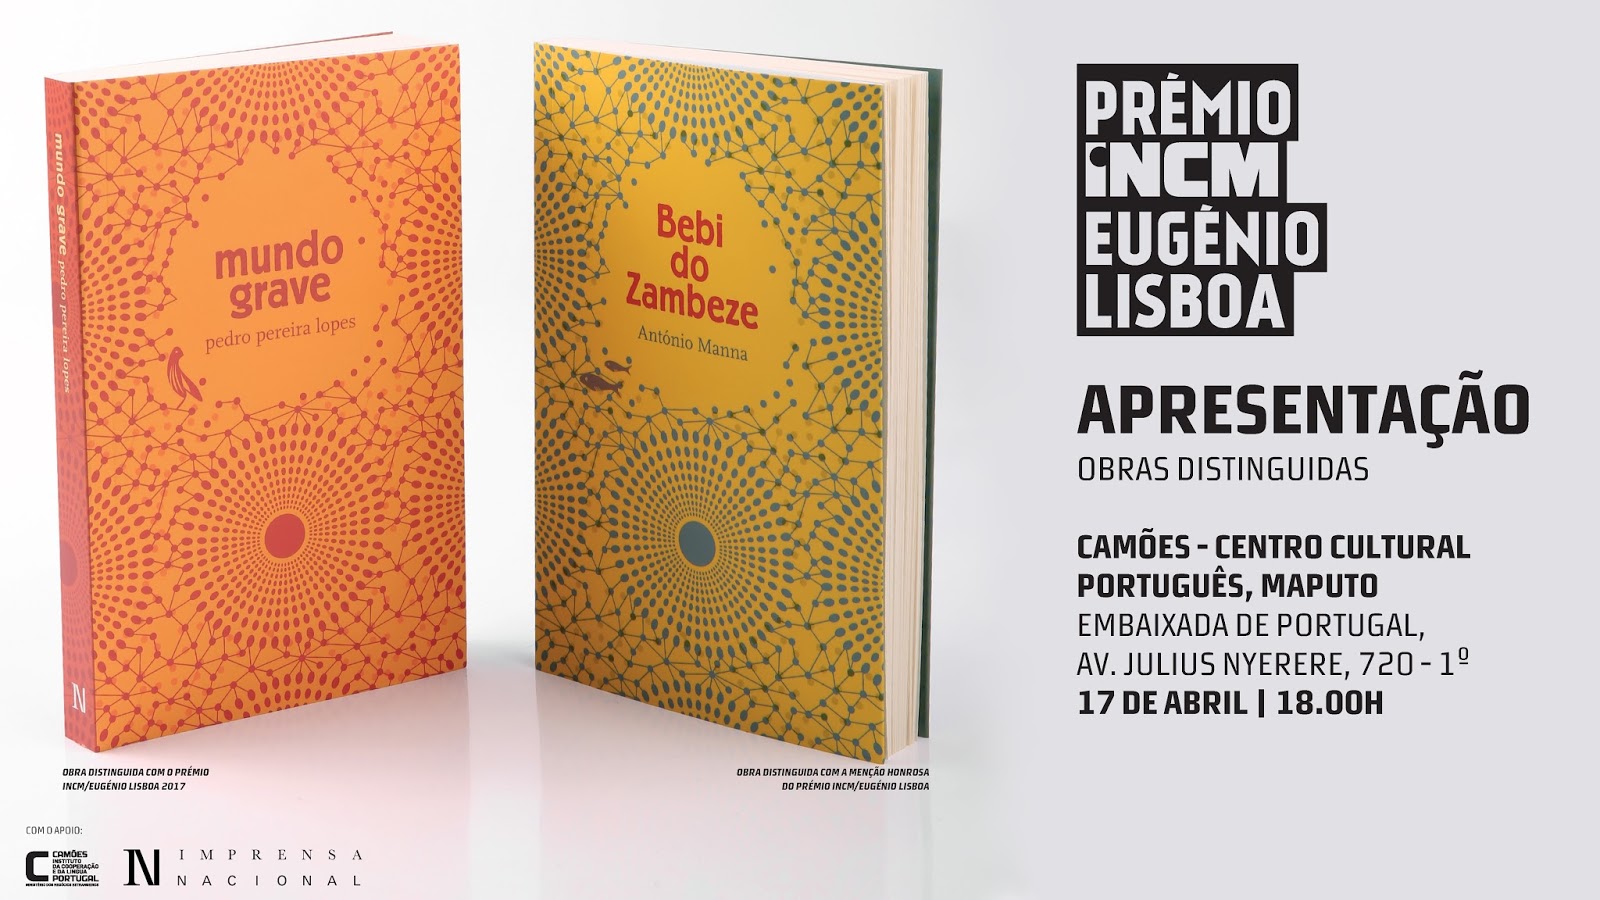 17-04-18 MAPUTO – Apresentação das duas obras distinguidas na 1.ª edição do Prémio INCM/Eugénio Lisboa